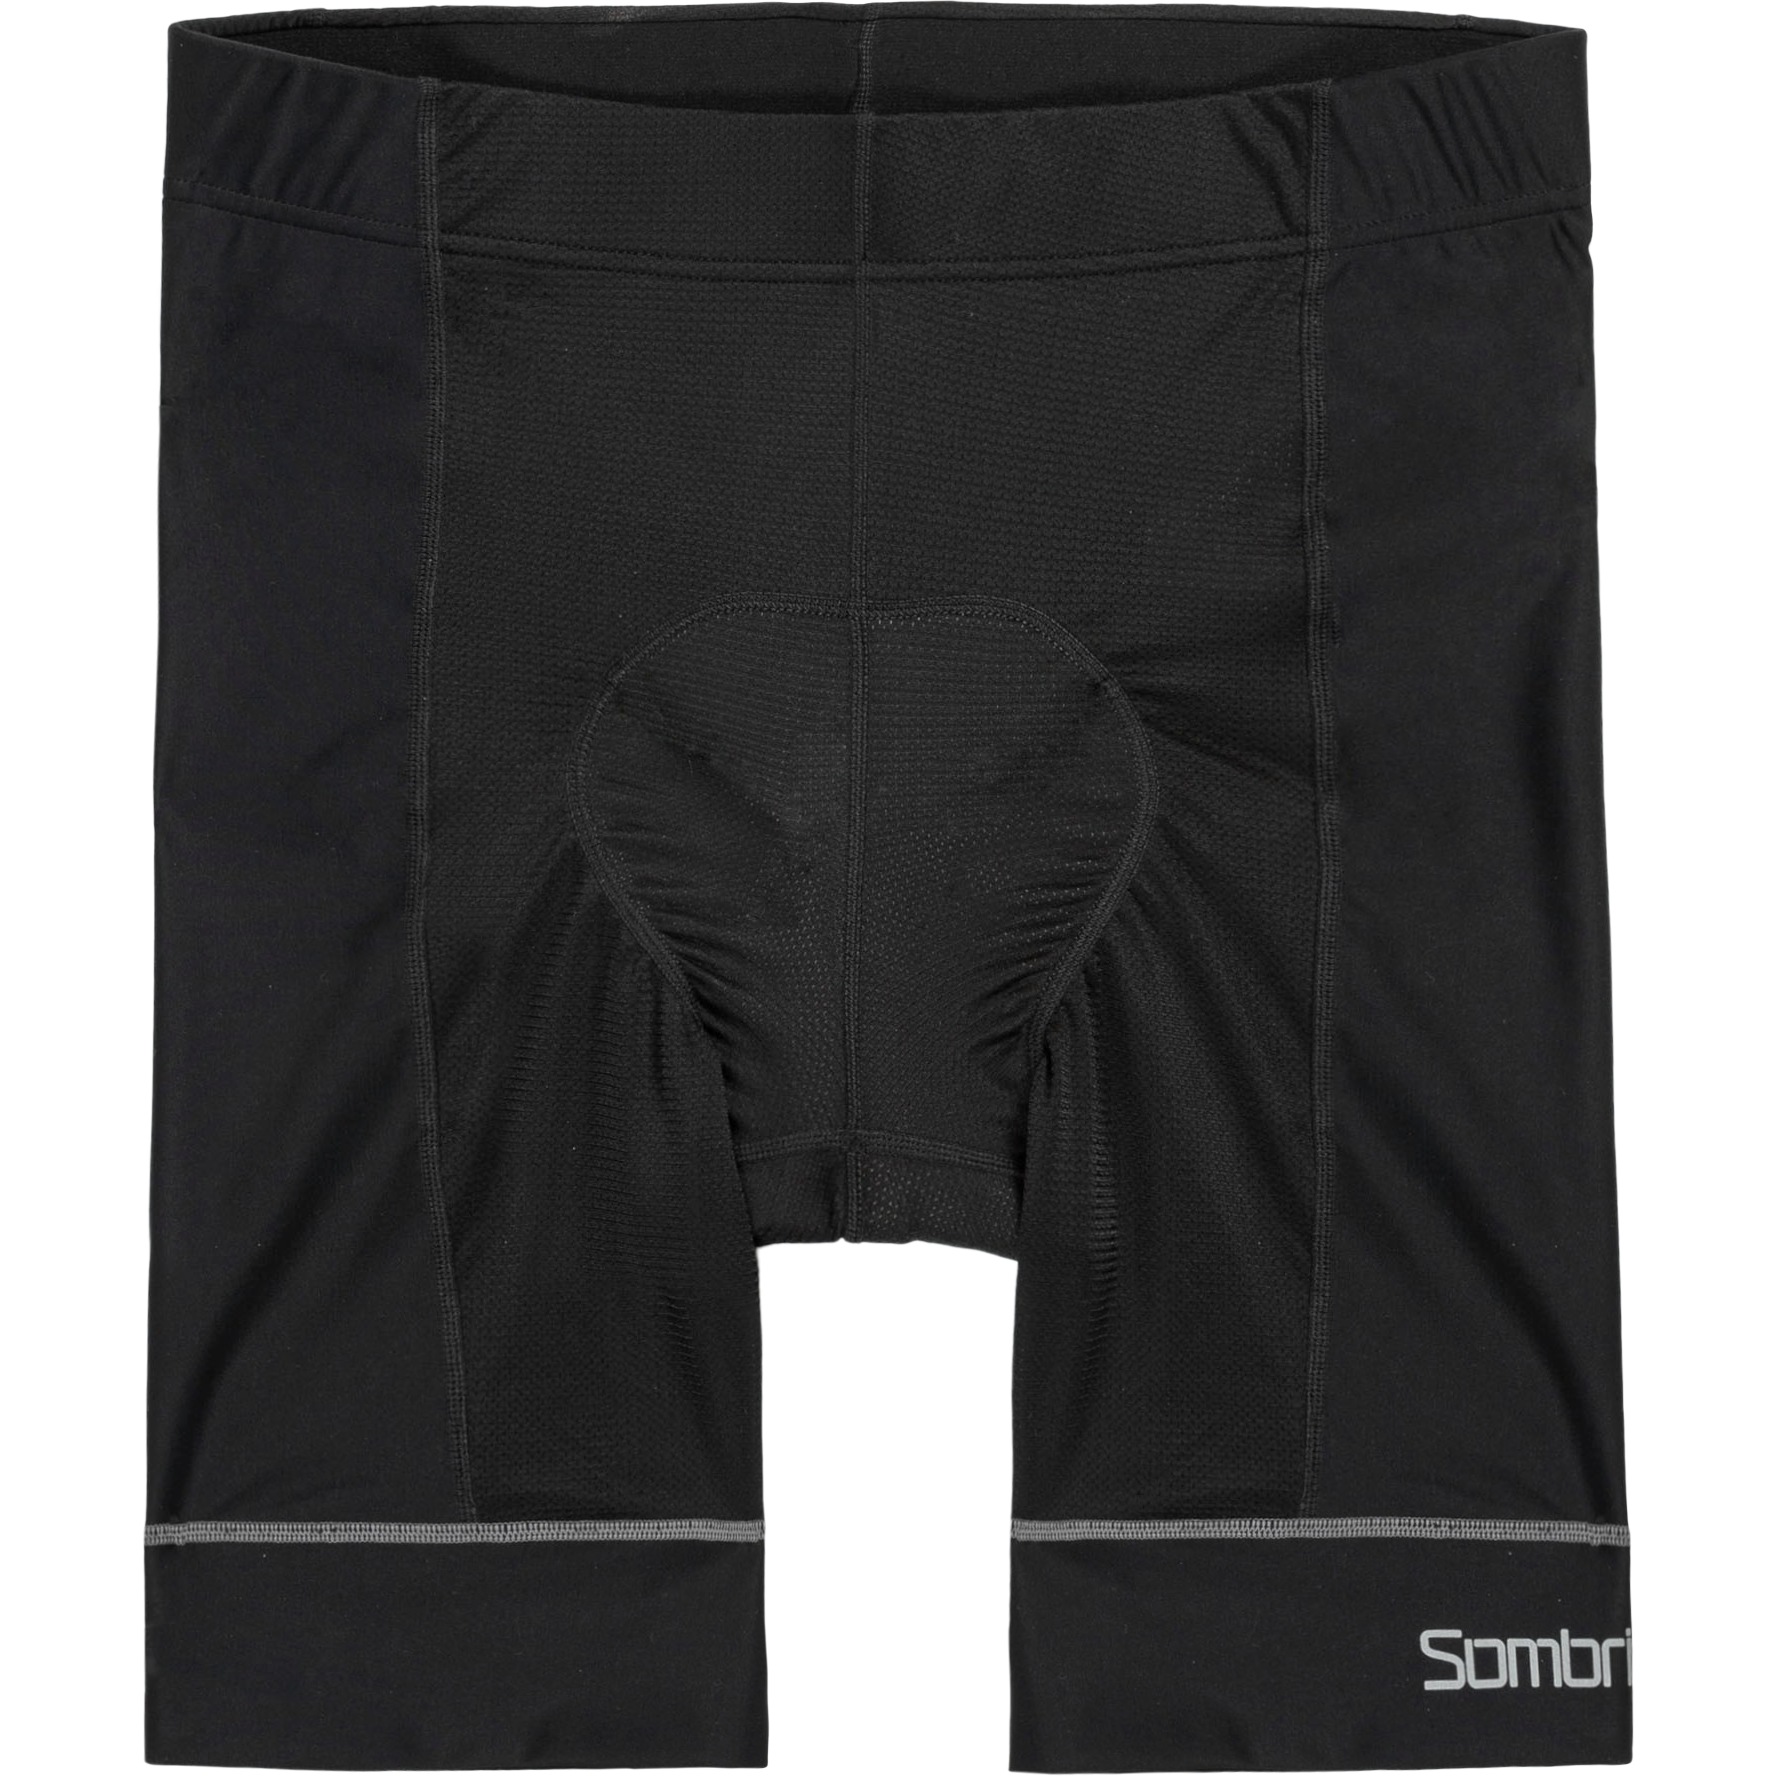 Produktbild von Sombrio Epik Crank Liner Shorts - Schwarz